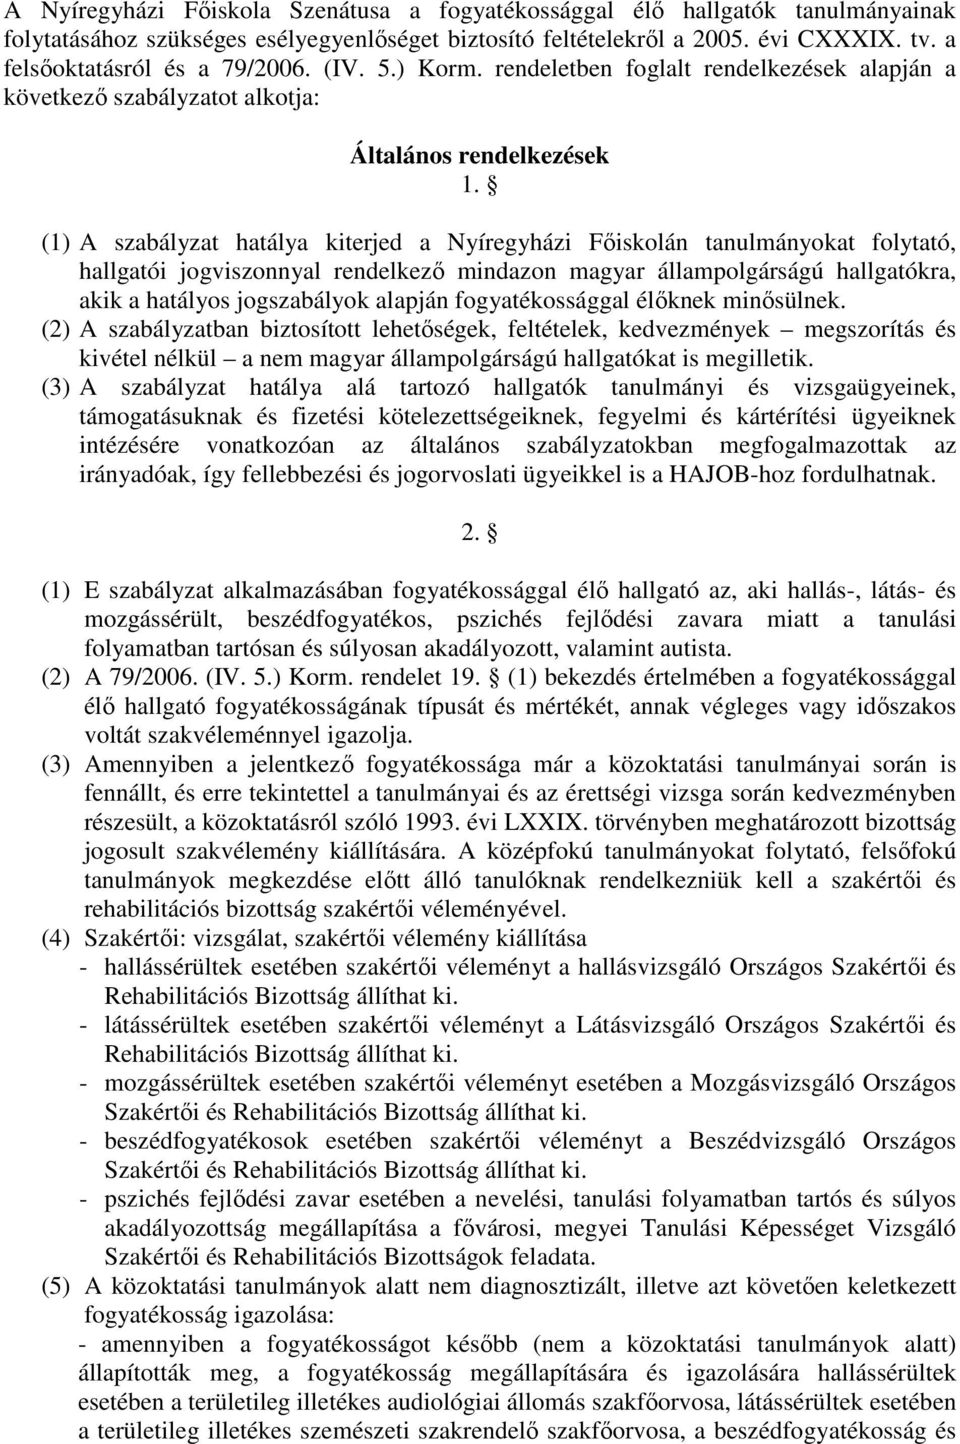 (1) A szabályzat hatálya kiterjed a Nyíregyházi Fıiskolán tanulmányokat folytató, hallgatói jogviszonnyal rendelkezı mindazon magyar állampolgárságú hallgatókra, akik a hatályos jogszabályok alapján